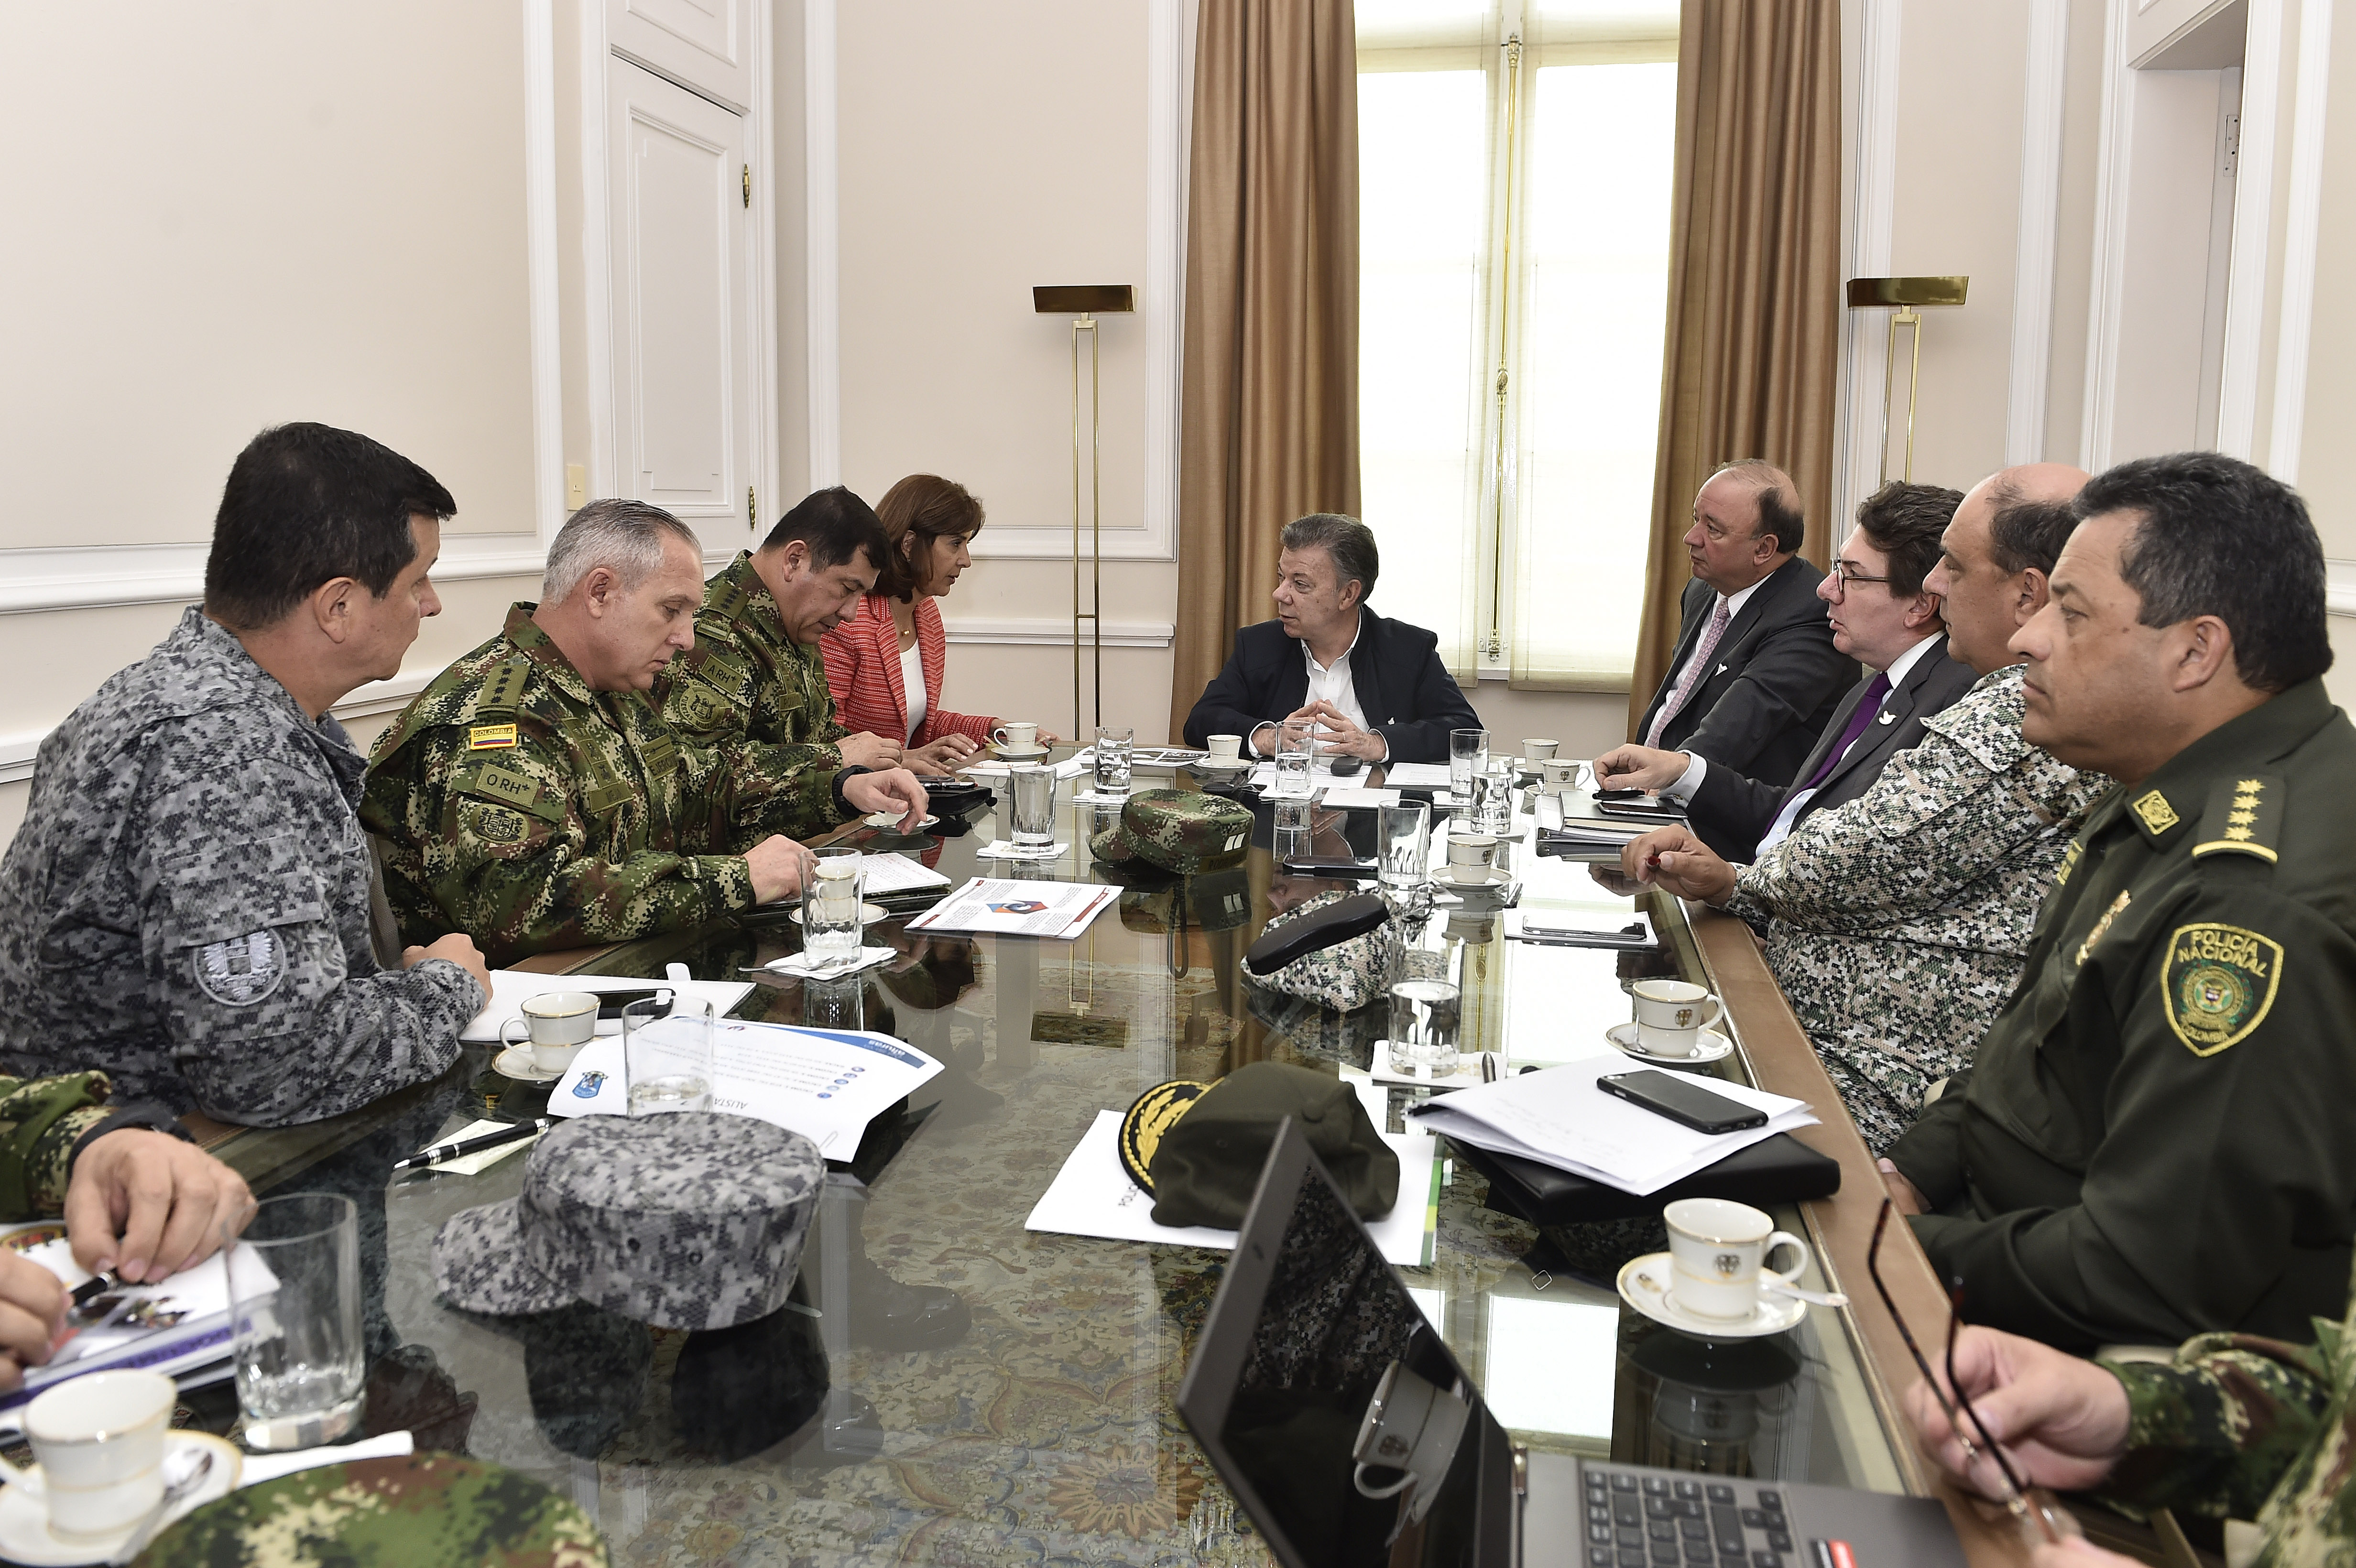 Presidente Santos lidera reunión con la Canciller Holguín, el Ministro de Defensa y la Cúpula Militar y de Policía, en la que se revisa la situación de frontera de Colombia y Venezuela